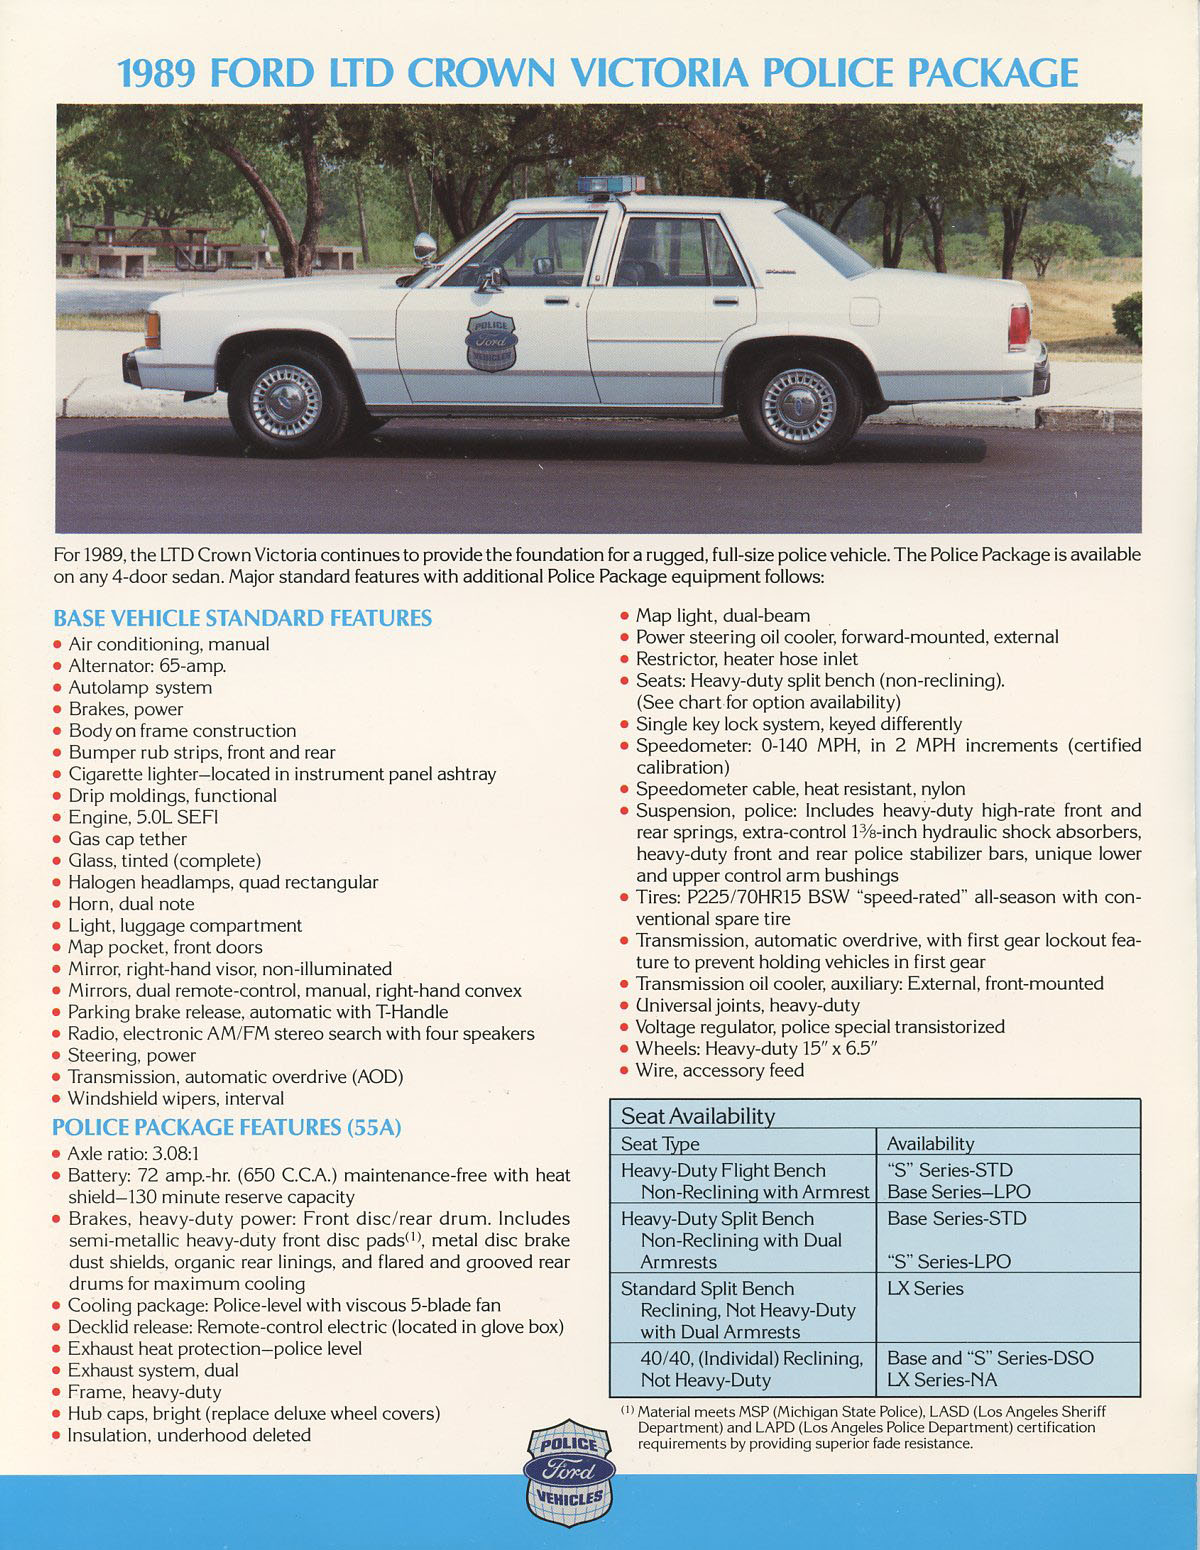 n_1989 Ford Police Package-02.jpg